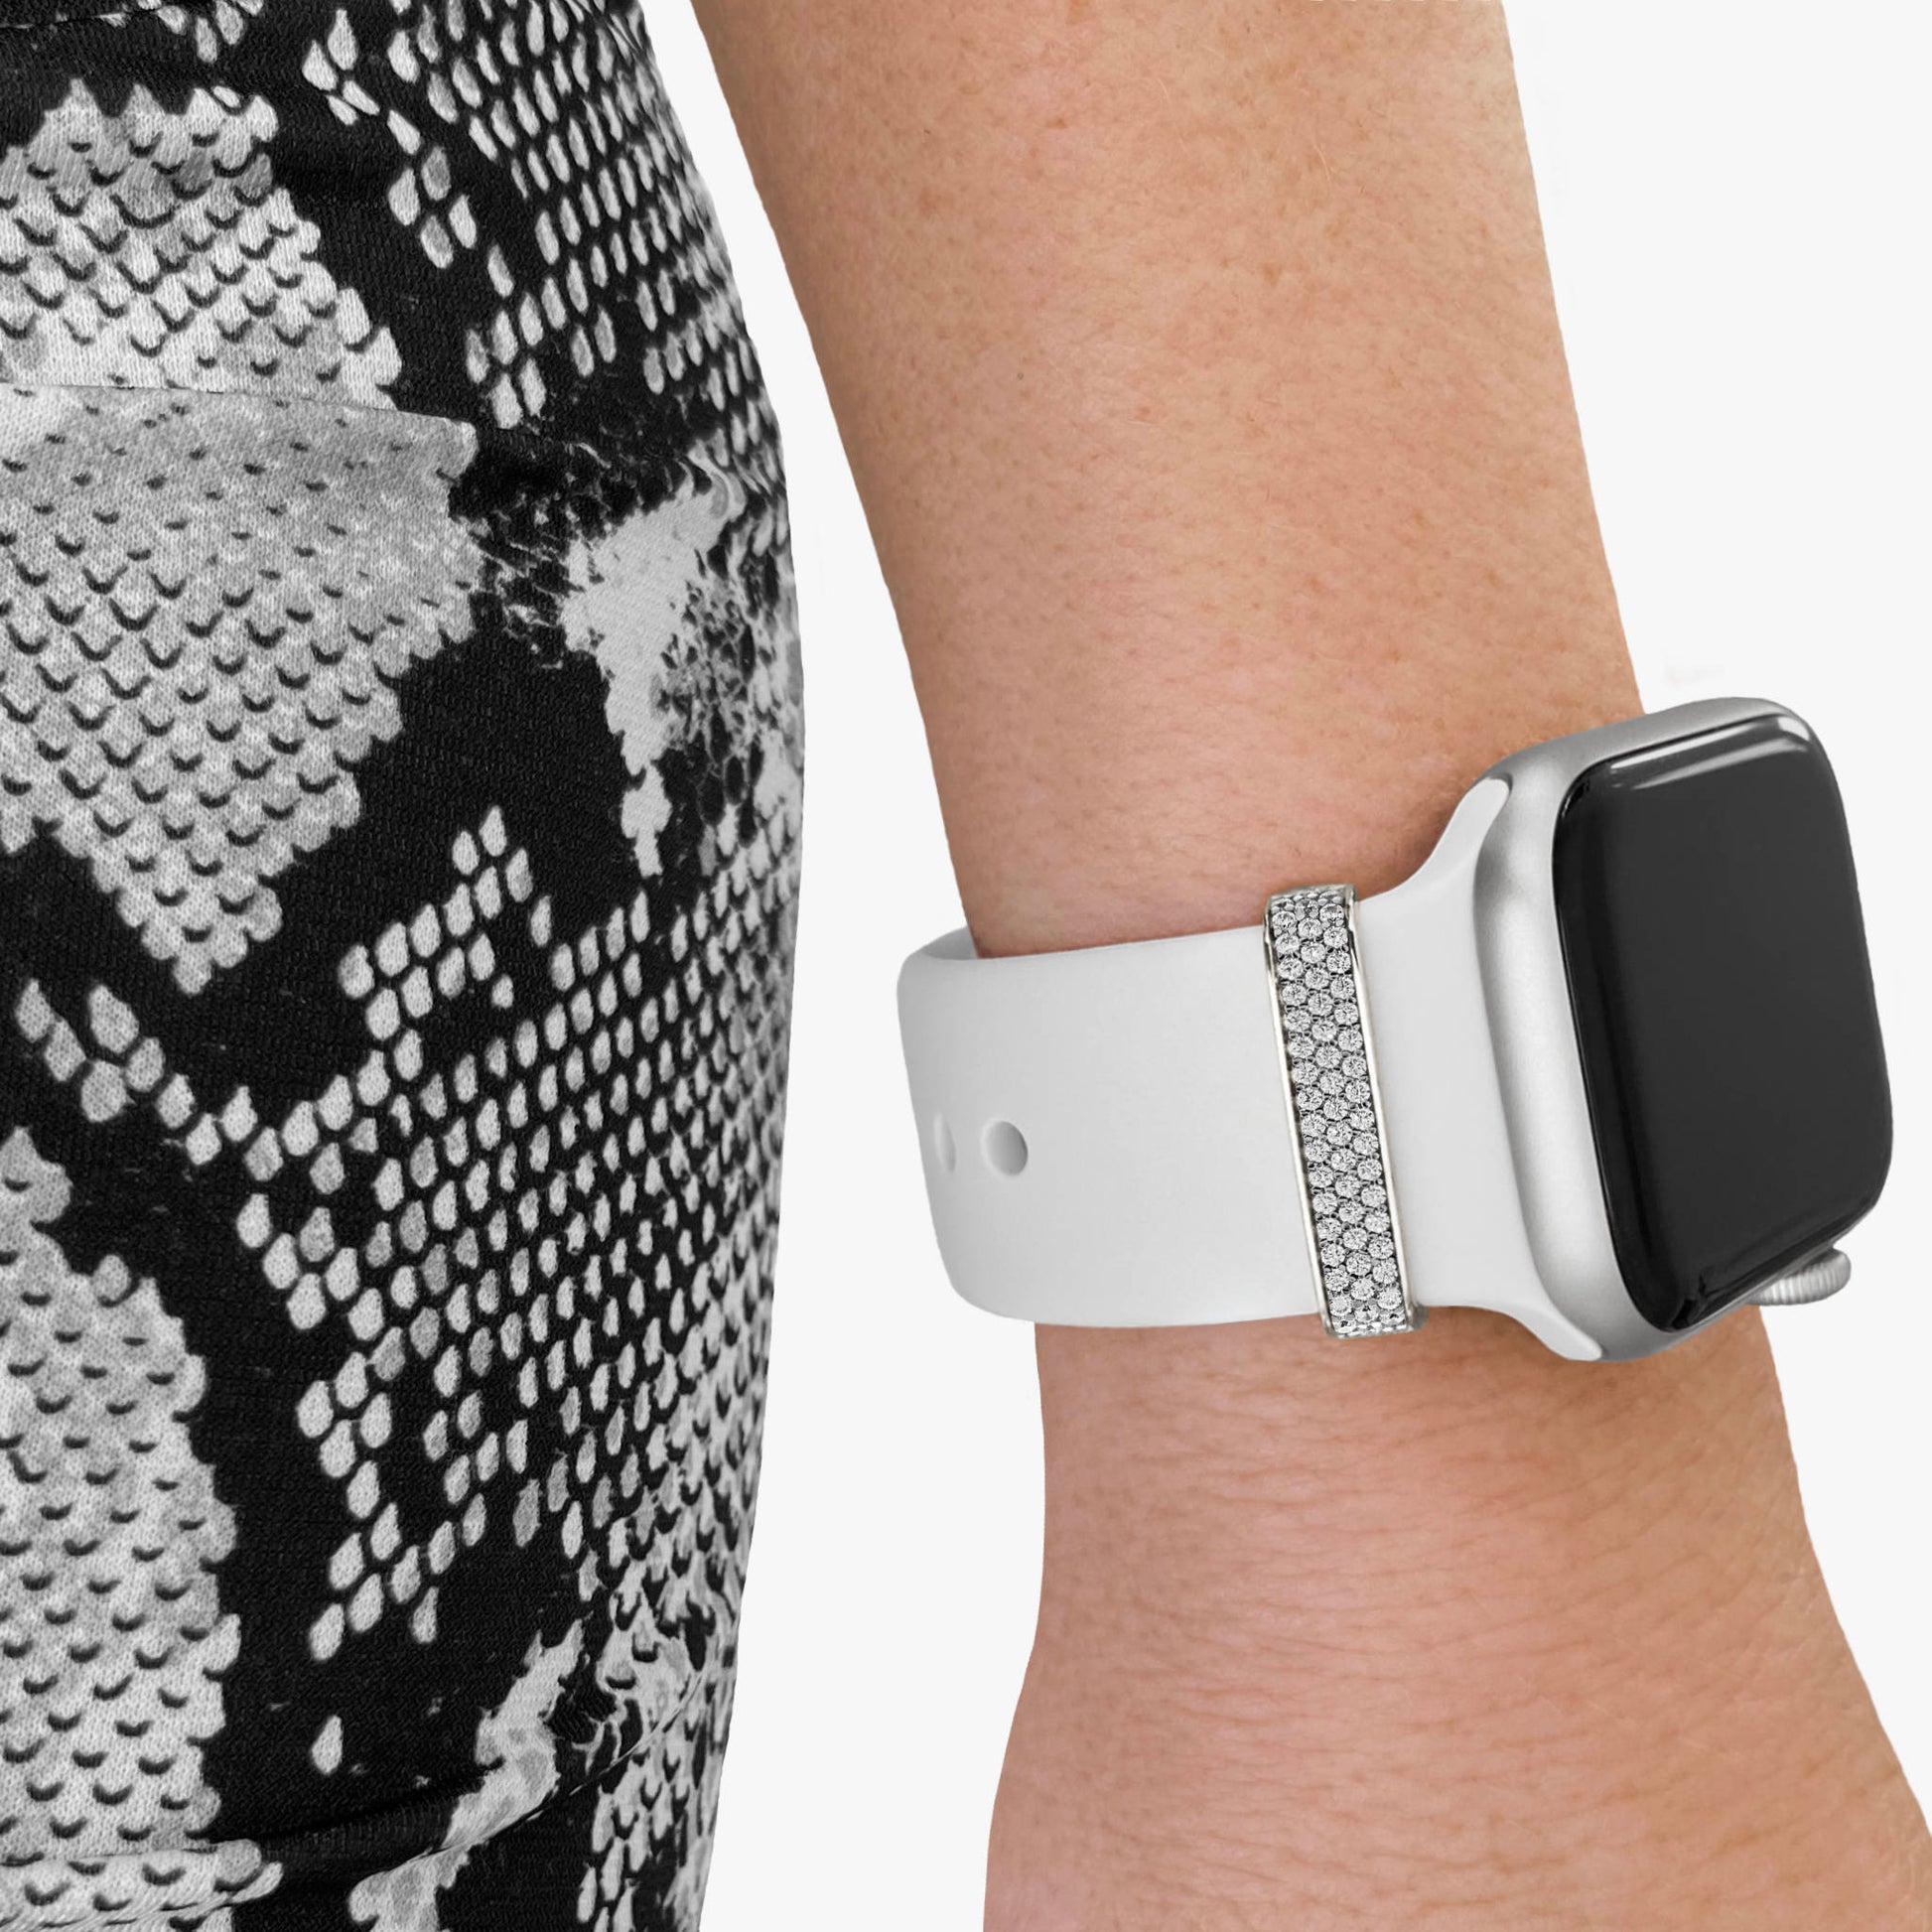  Pamoro®Loop für dein Apple Watch Sportarmband  -  Schmuck Charm in echt Silber rhodiniert - 55 weiße Cubic Zirkonia im Brillantschliff